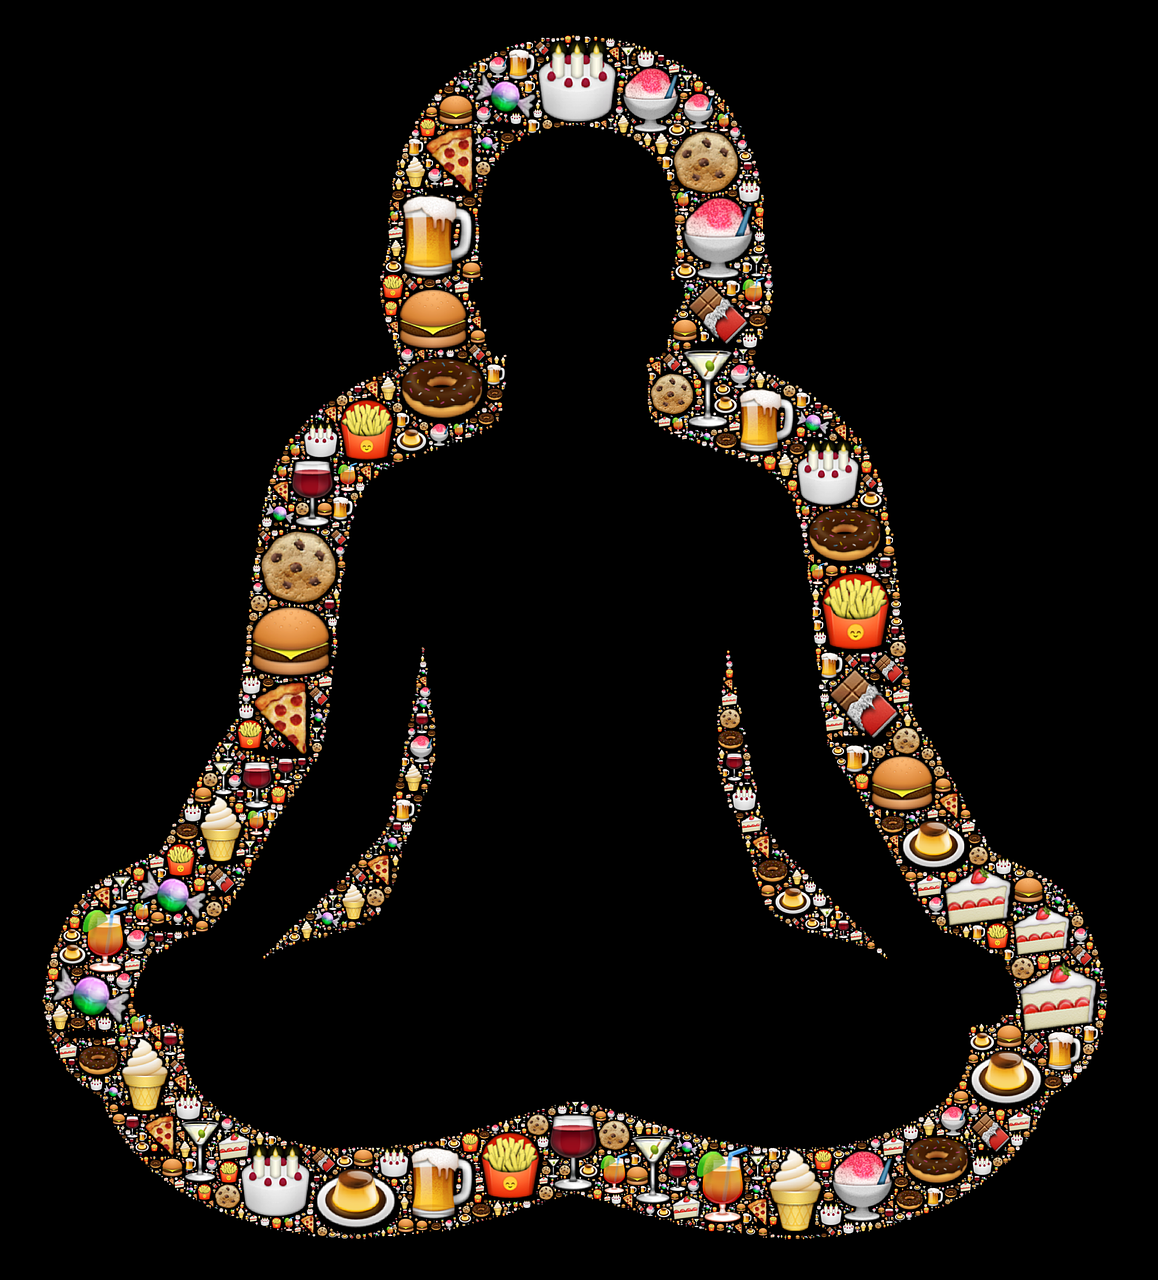 Food, Mood and Meditation